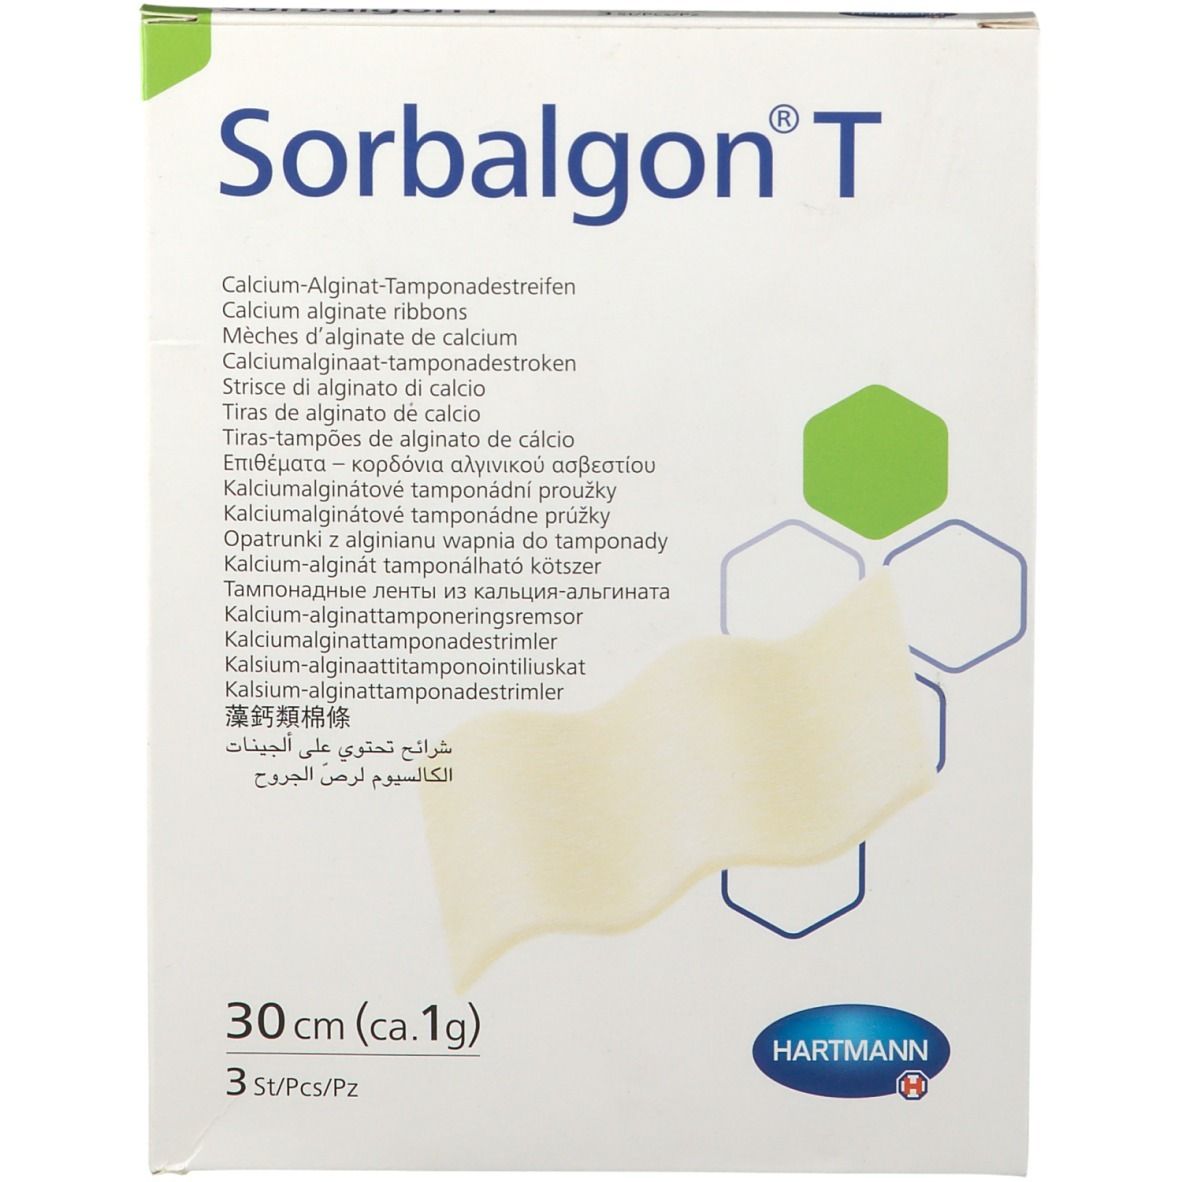 Sorbalgon® T Tamponadensteifen 1g/30 cm